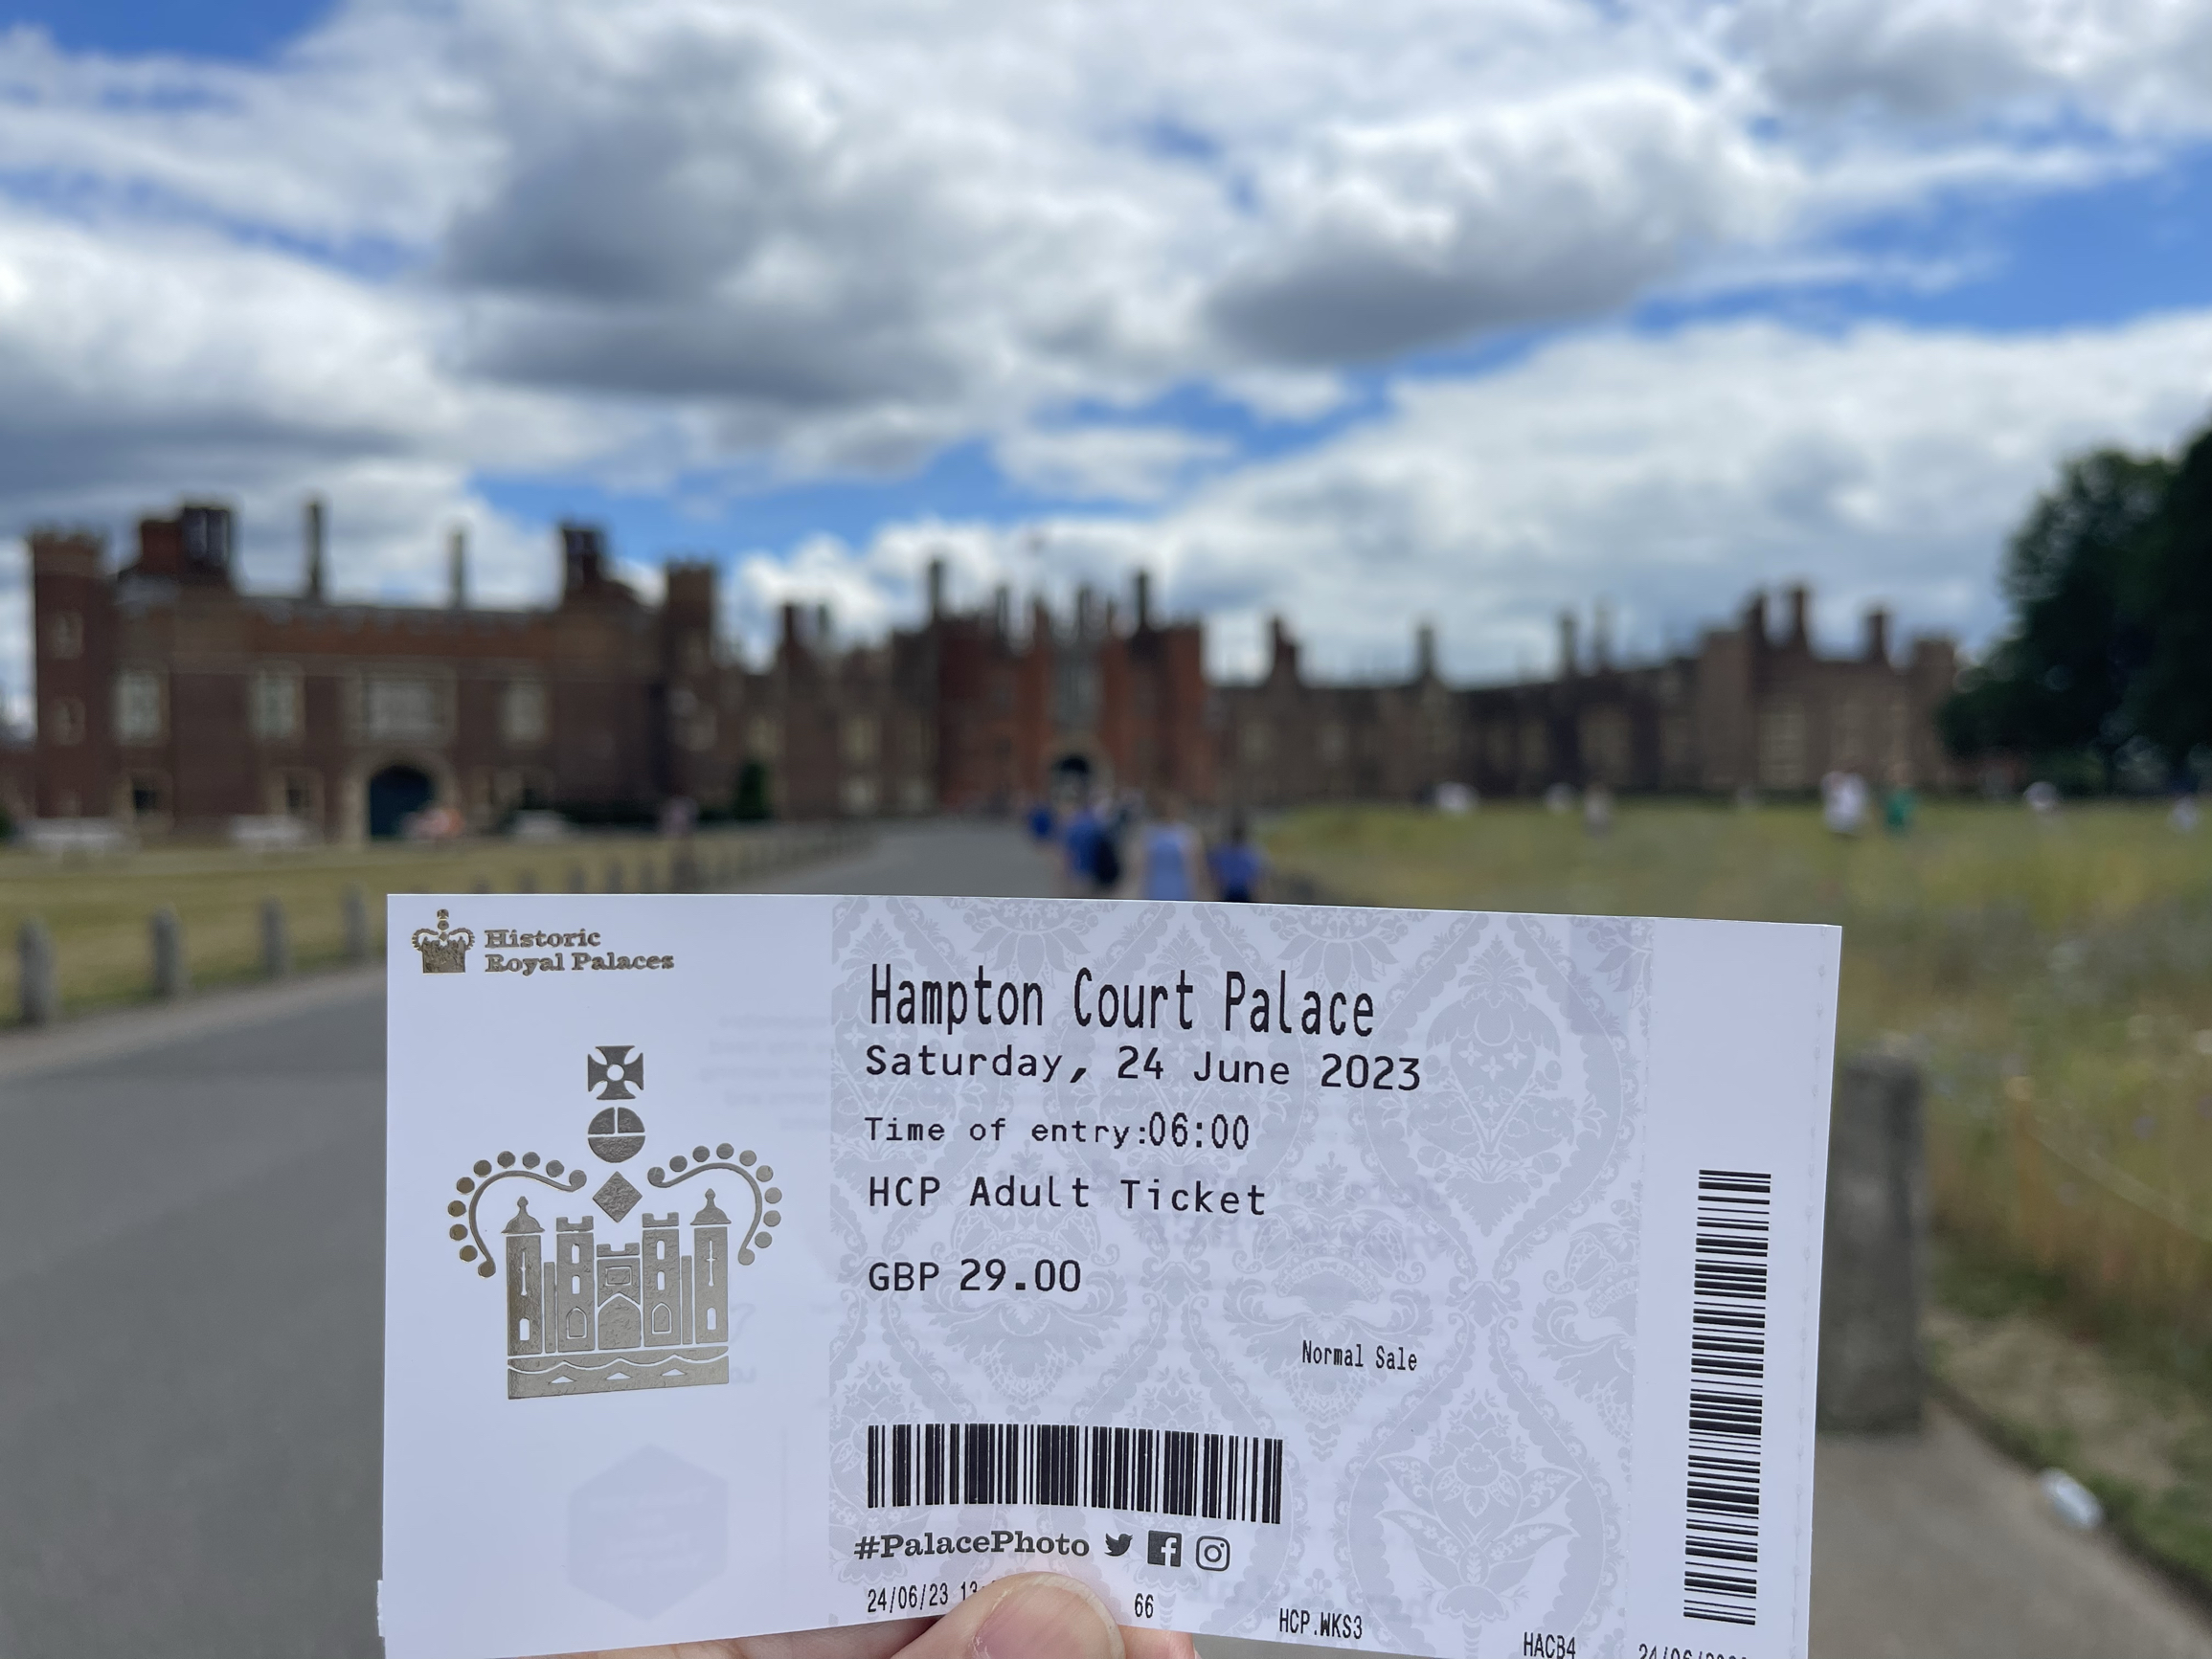 到Hampton court palace看看英国史上最能折腾的国王亨利八世的历史